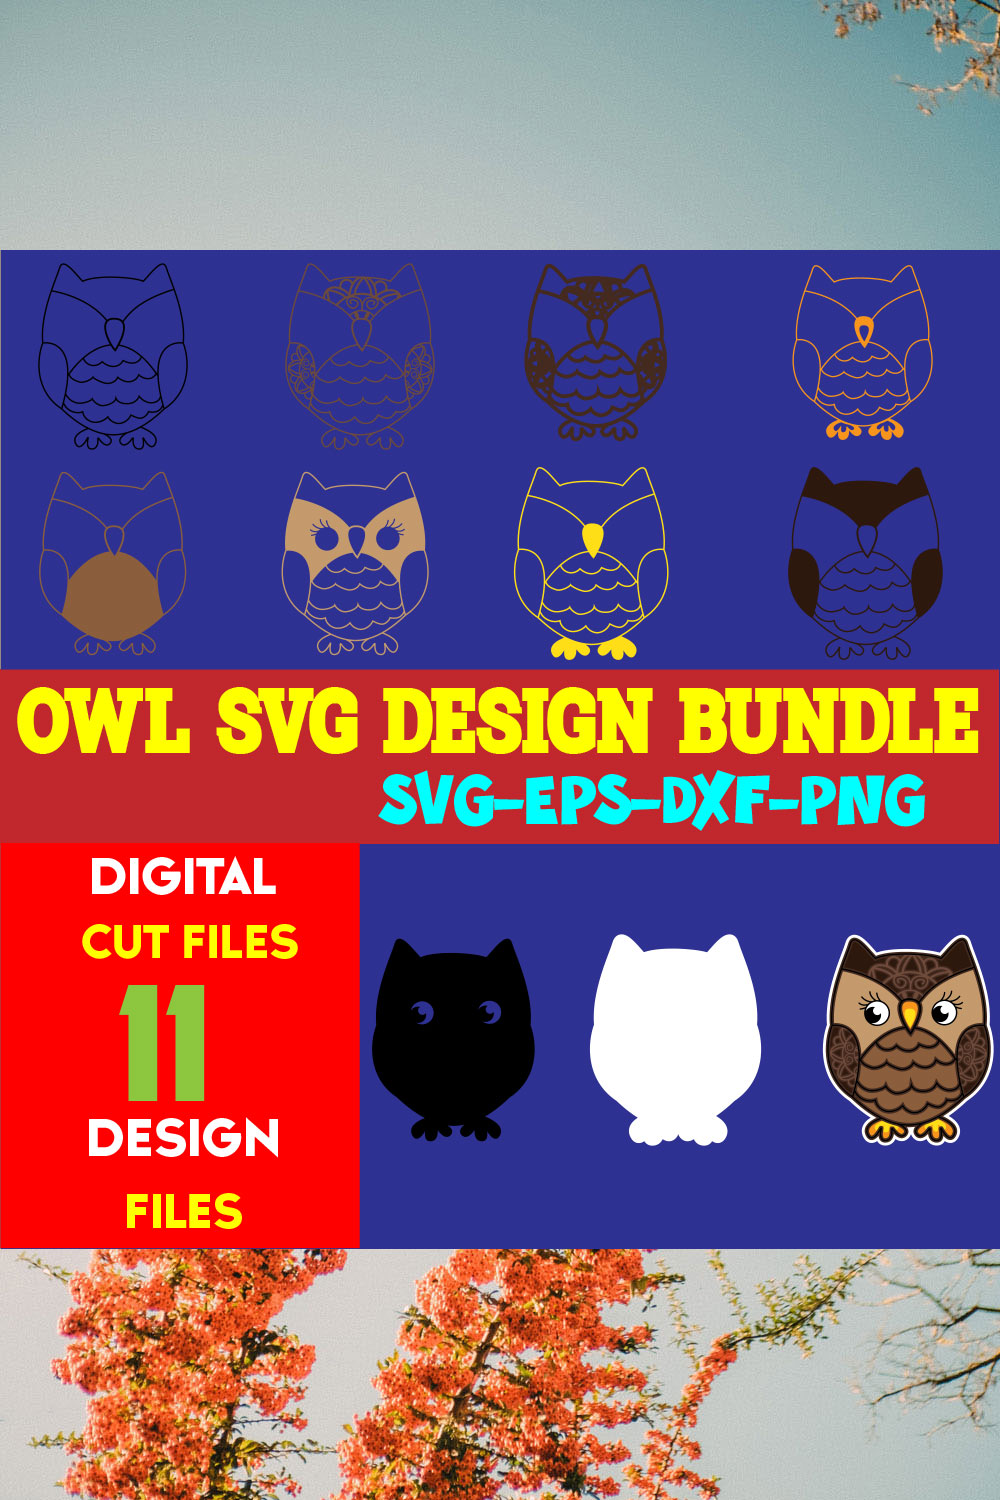 Owl SVG Design Bundle pinterest preview image.